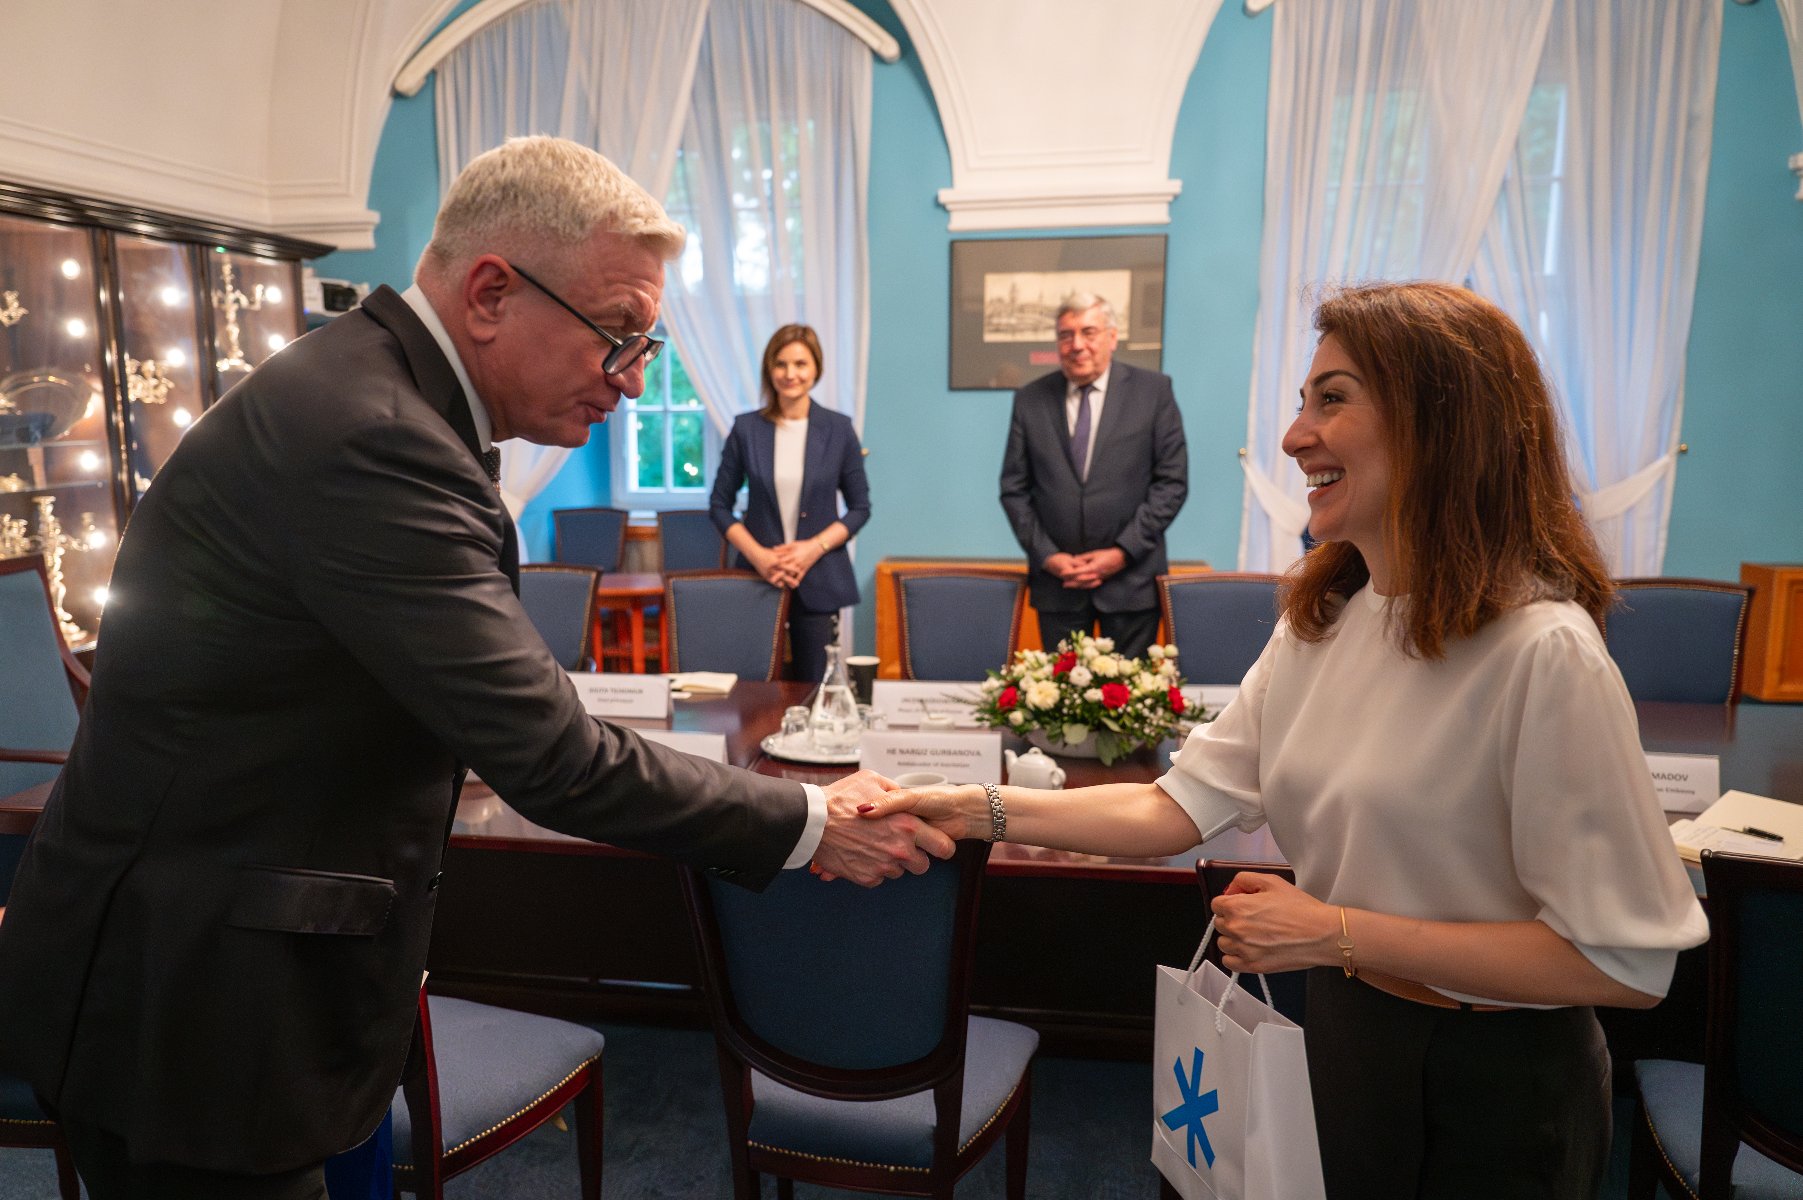 Na zdjęciu prezydent Poznania podający dłoń ambasador, w tle dwie osoby, w tym przewodniczący rady miasta - grafika artykułu